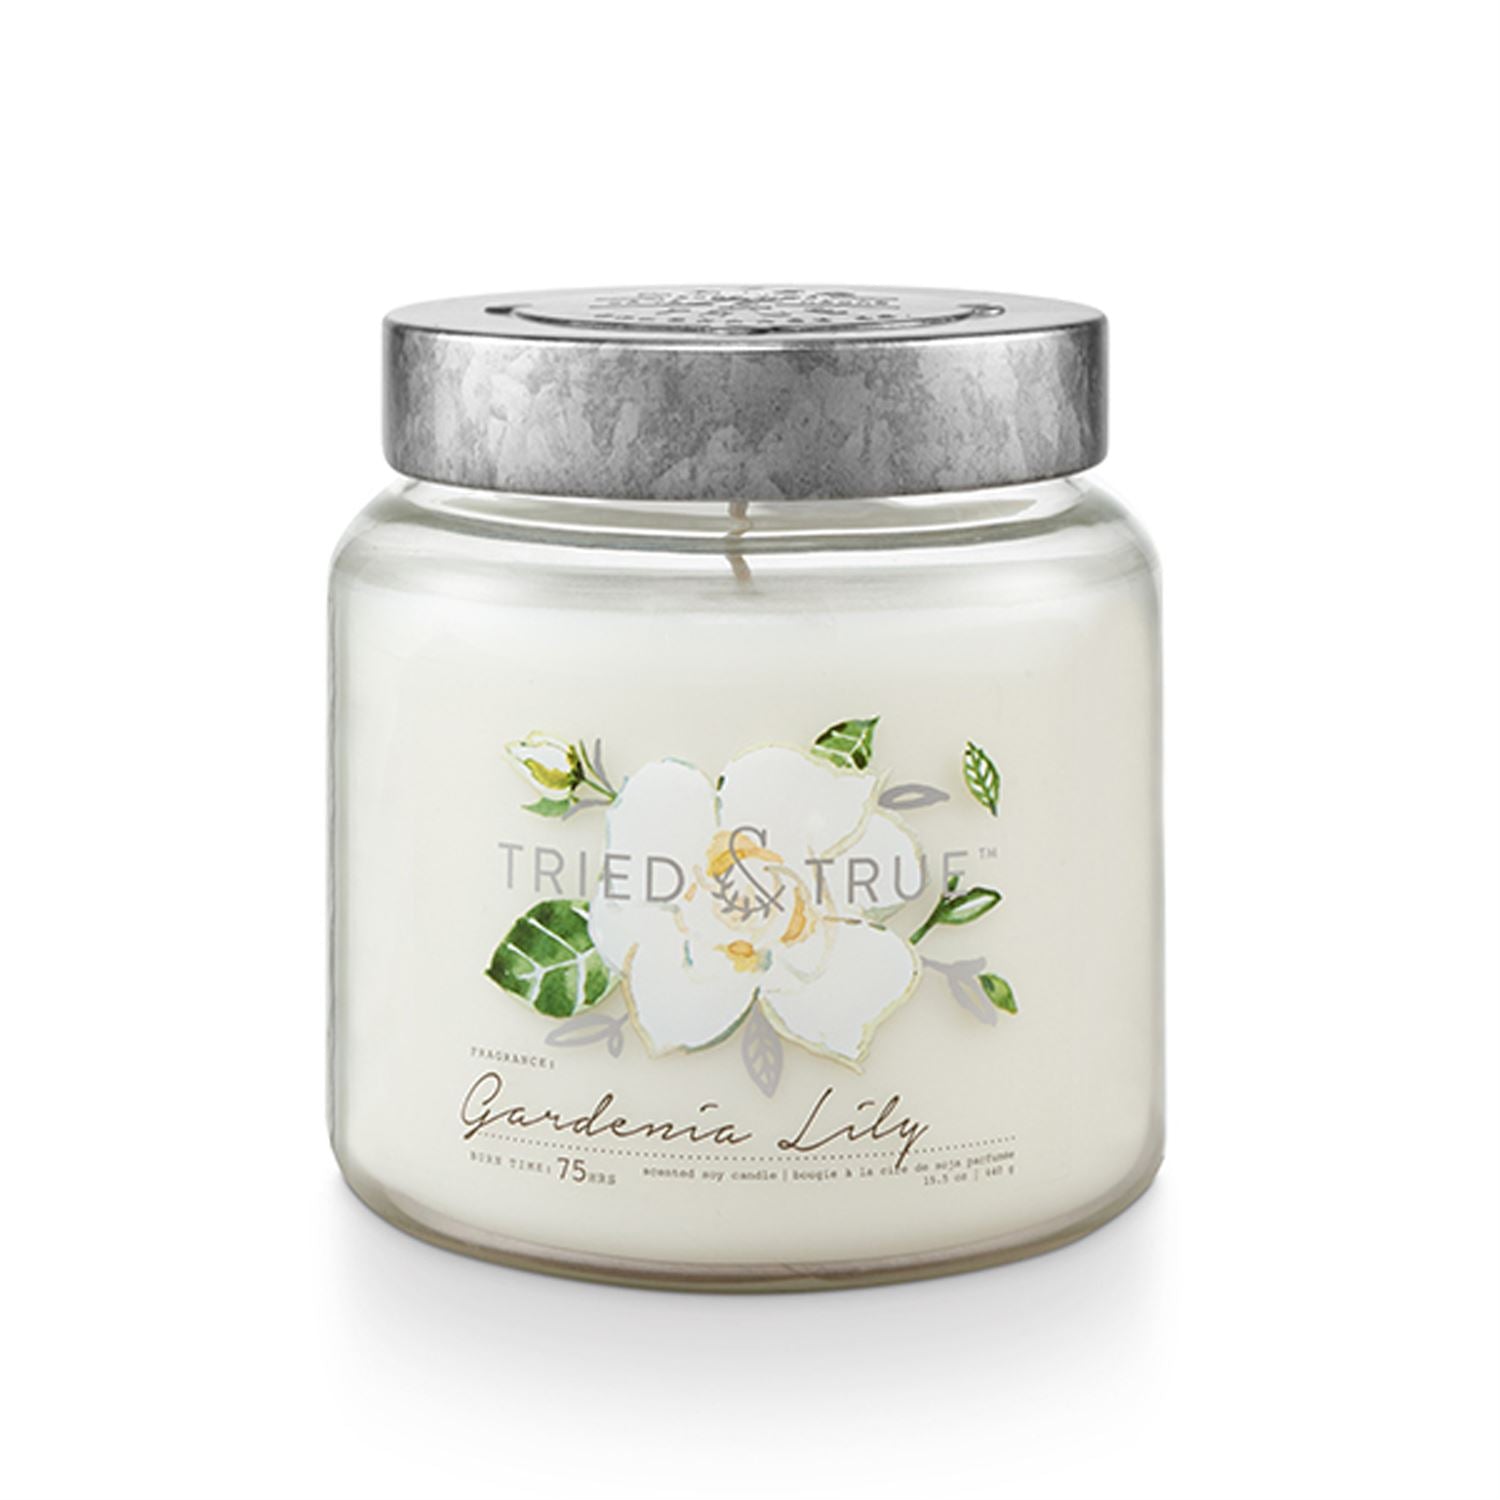 Tried & True Medium Jar Candle: Gardenia Lily